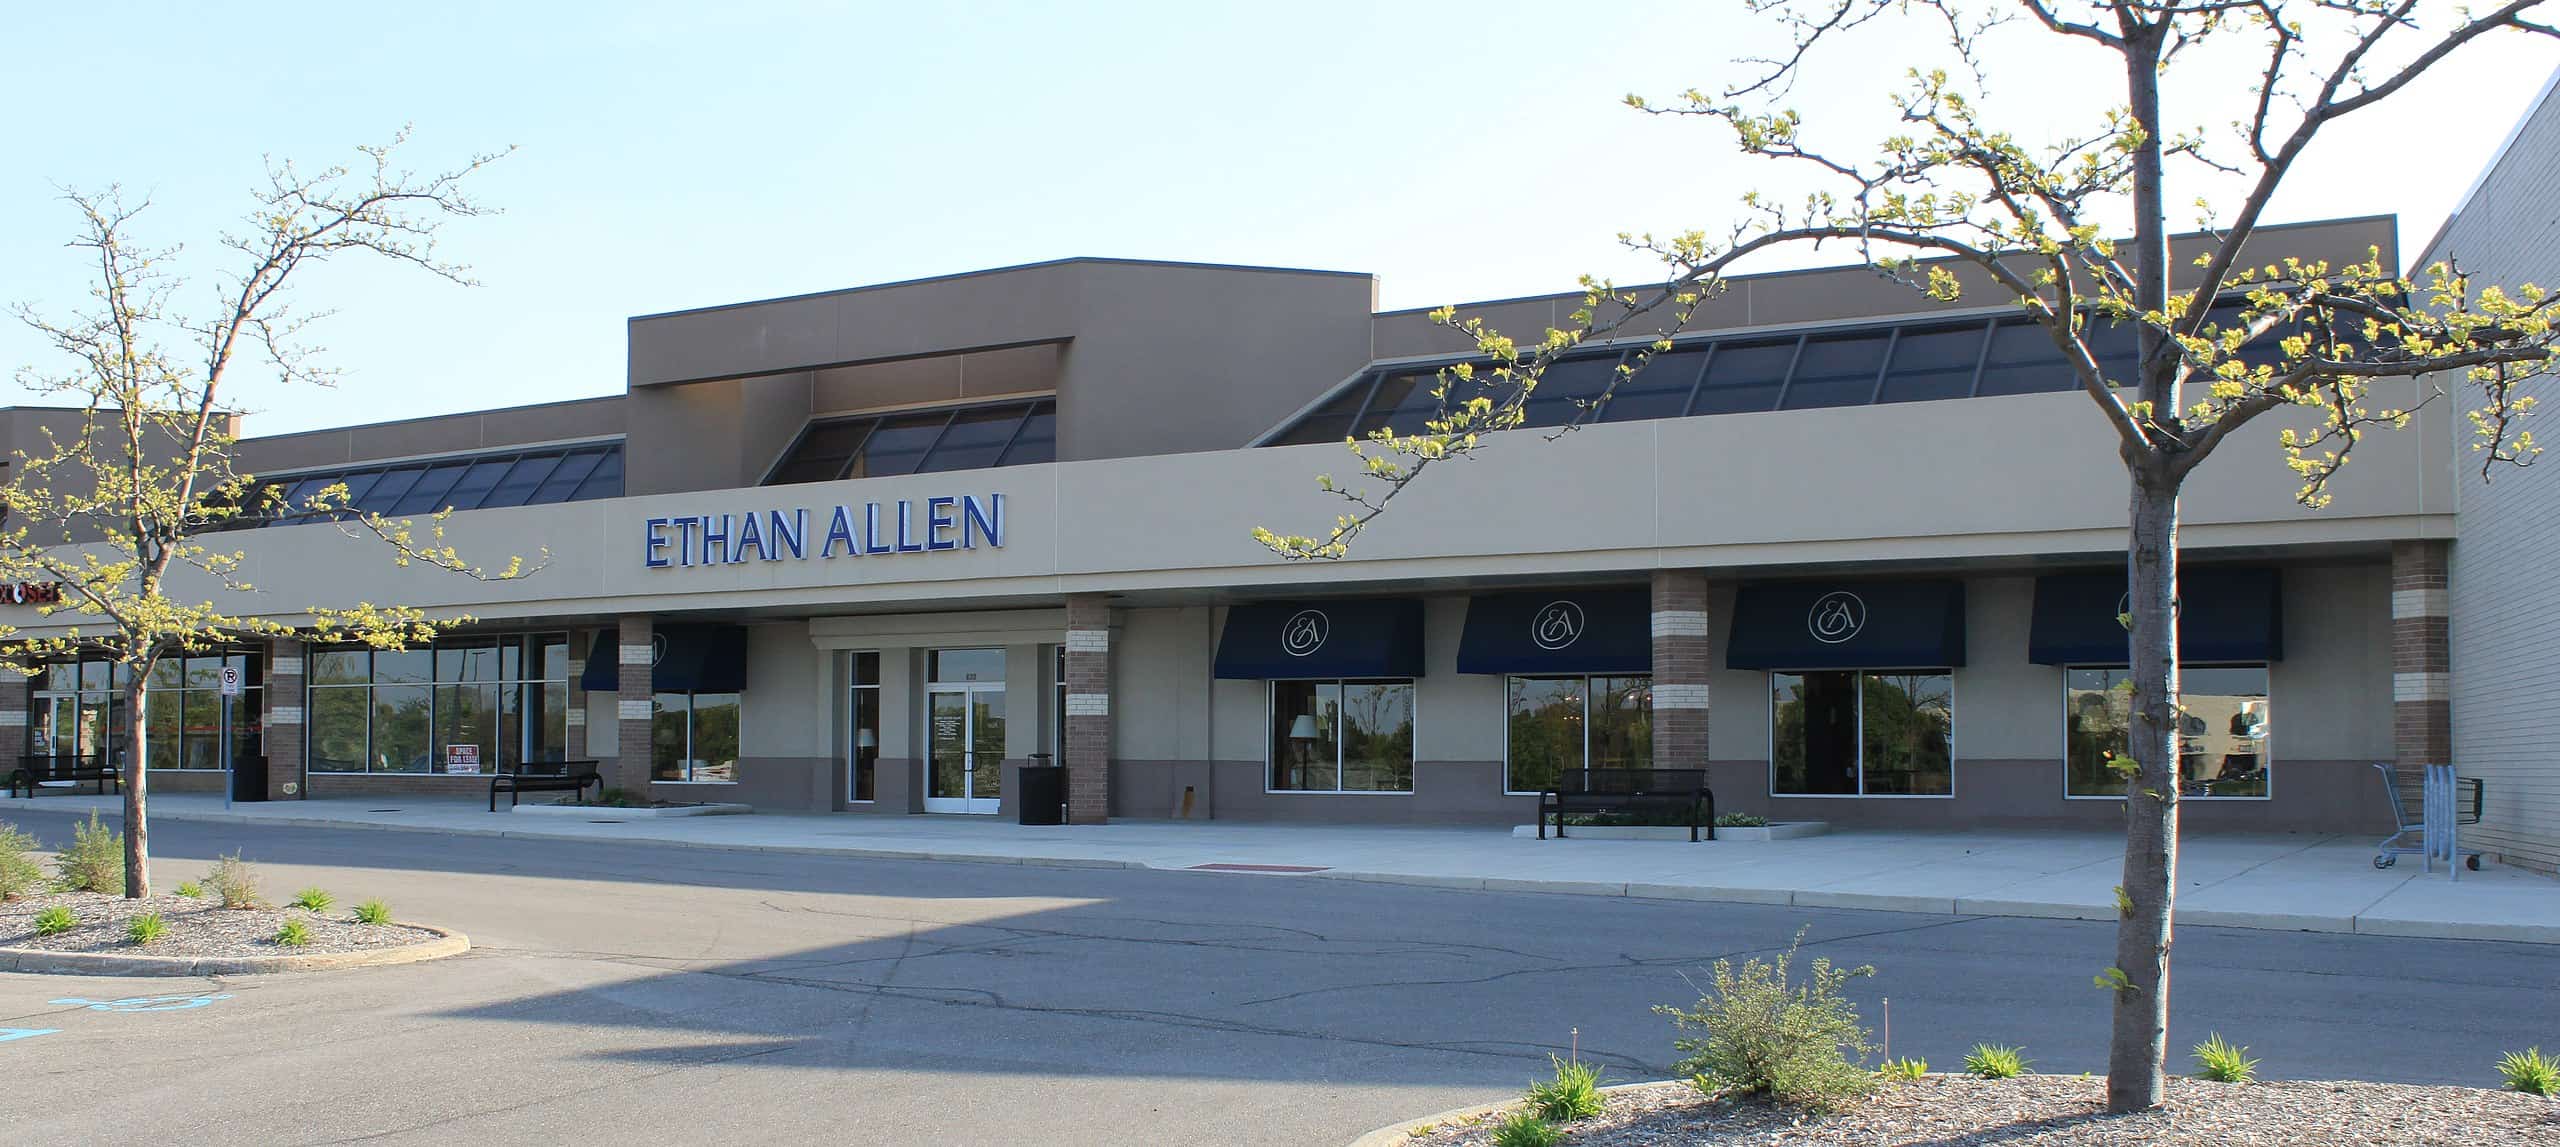 Ethan Allen Store in Ann Arbor, MI